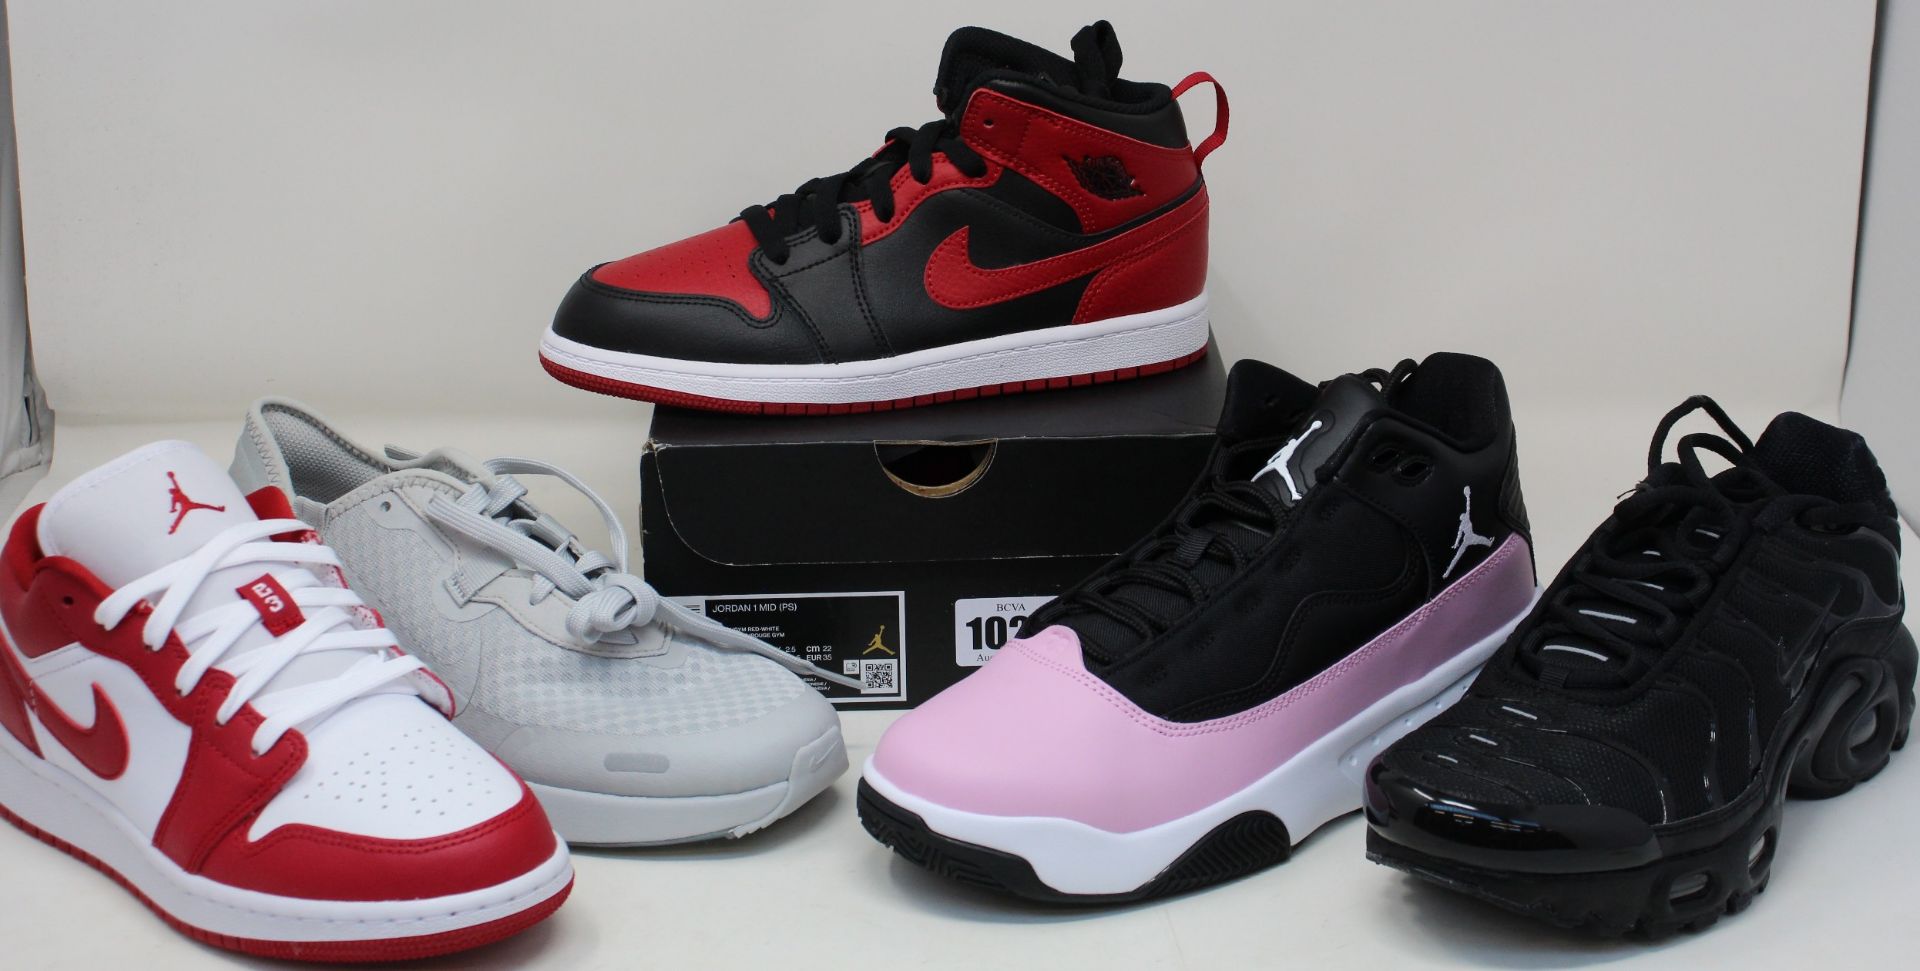 Five pairs of youths as new Nike trainers; Reposto (UK 5), Jordan Max Aura 2 (UK 5.5), Air Max